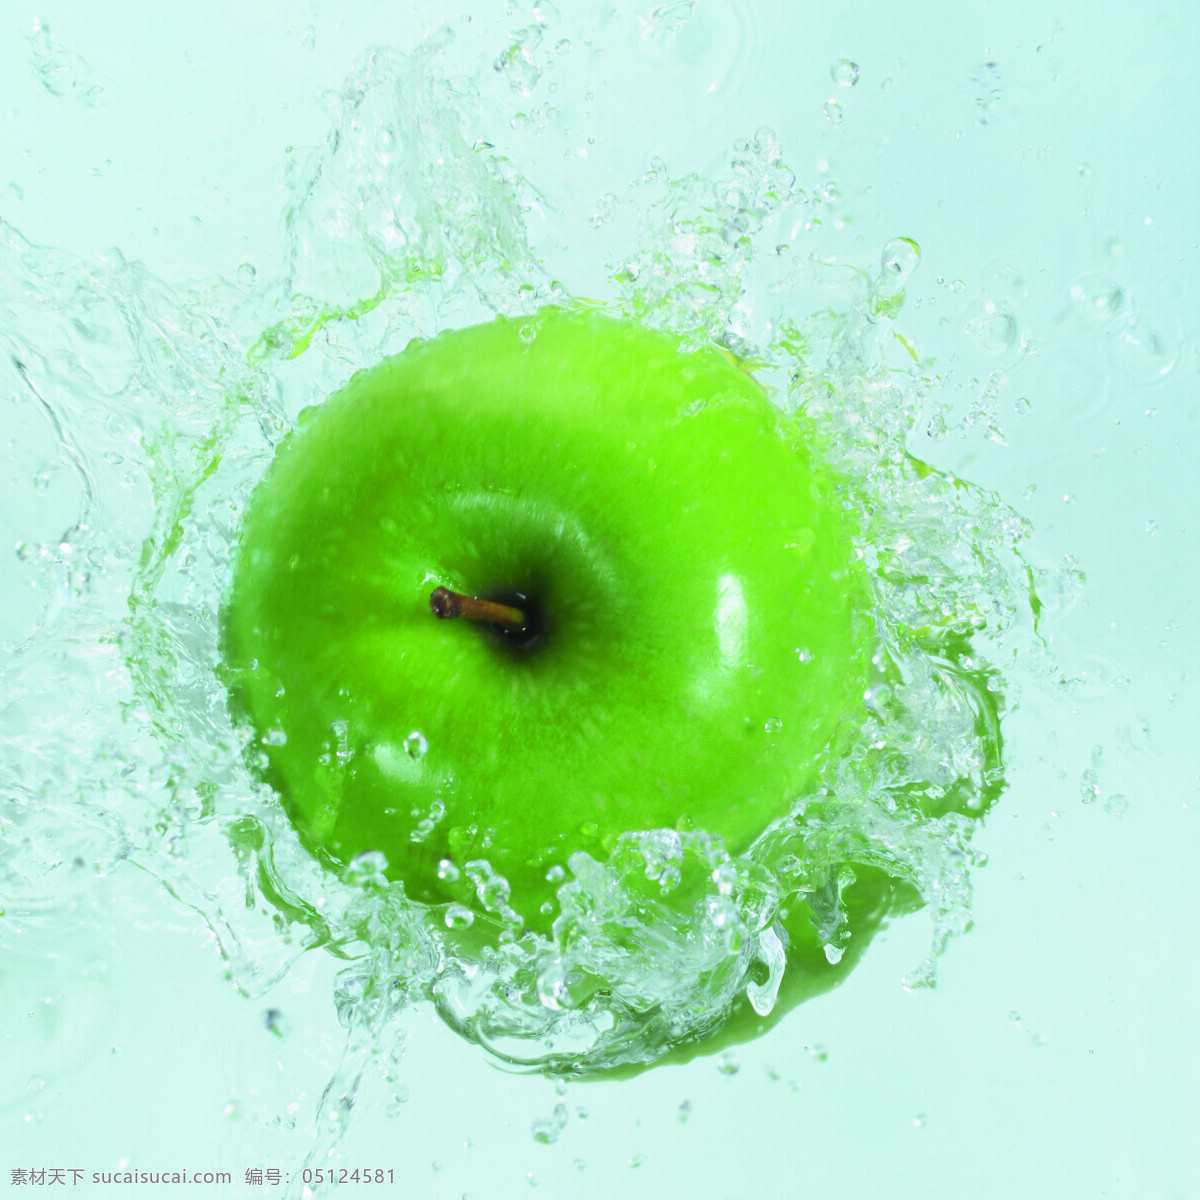 水中的青苹果 设计素材 水果 水波纹 水花四溅 苹果 青苹果 摄影素材 生物世界